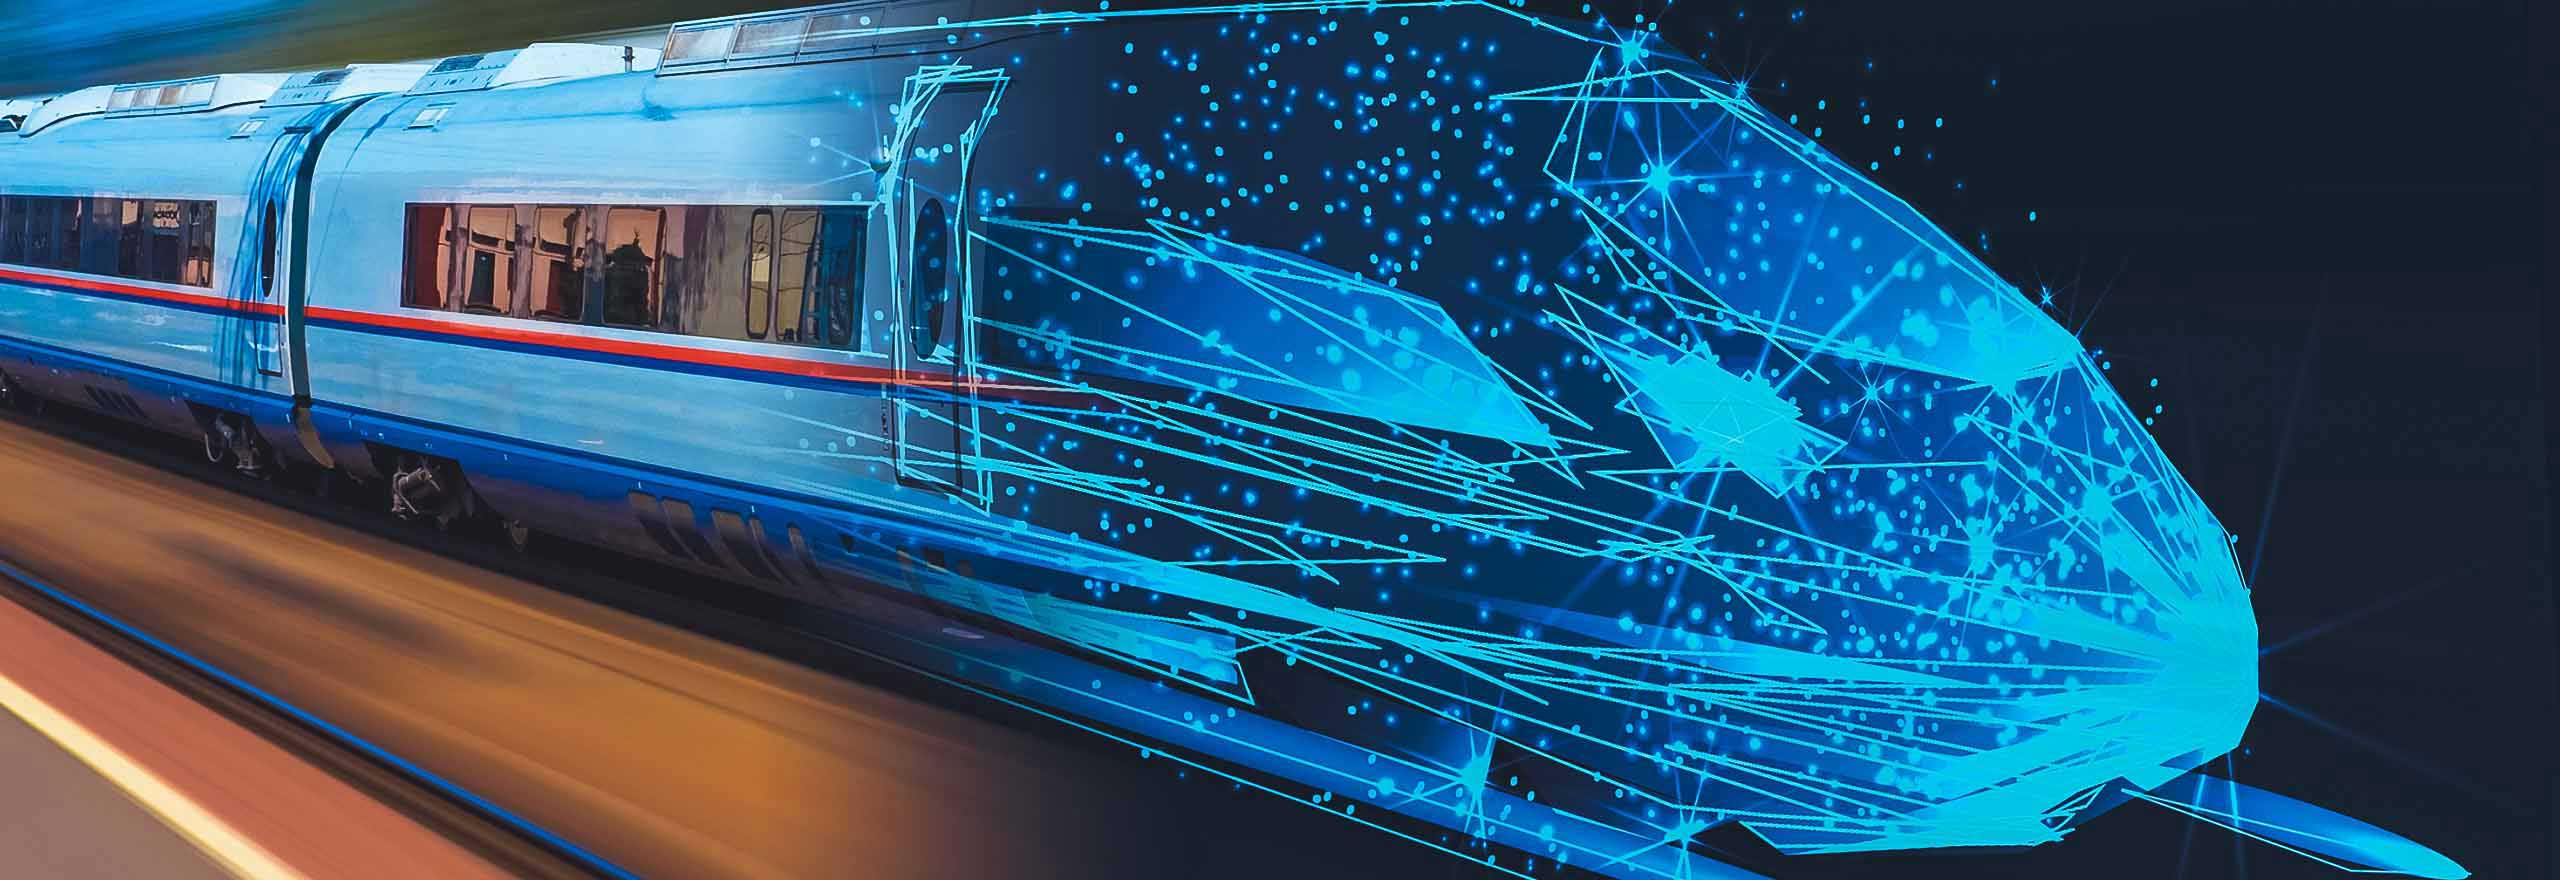 Imagen de un tren superpuesta con una representación digitalizada